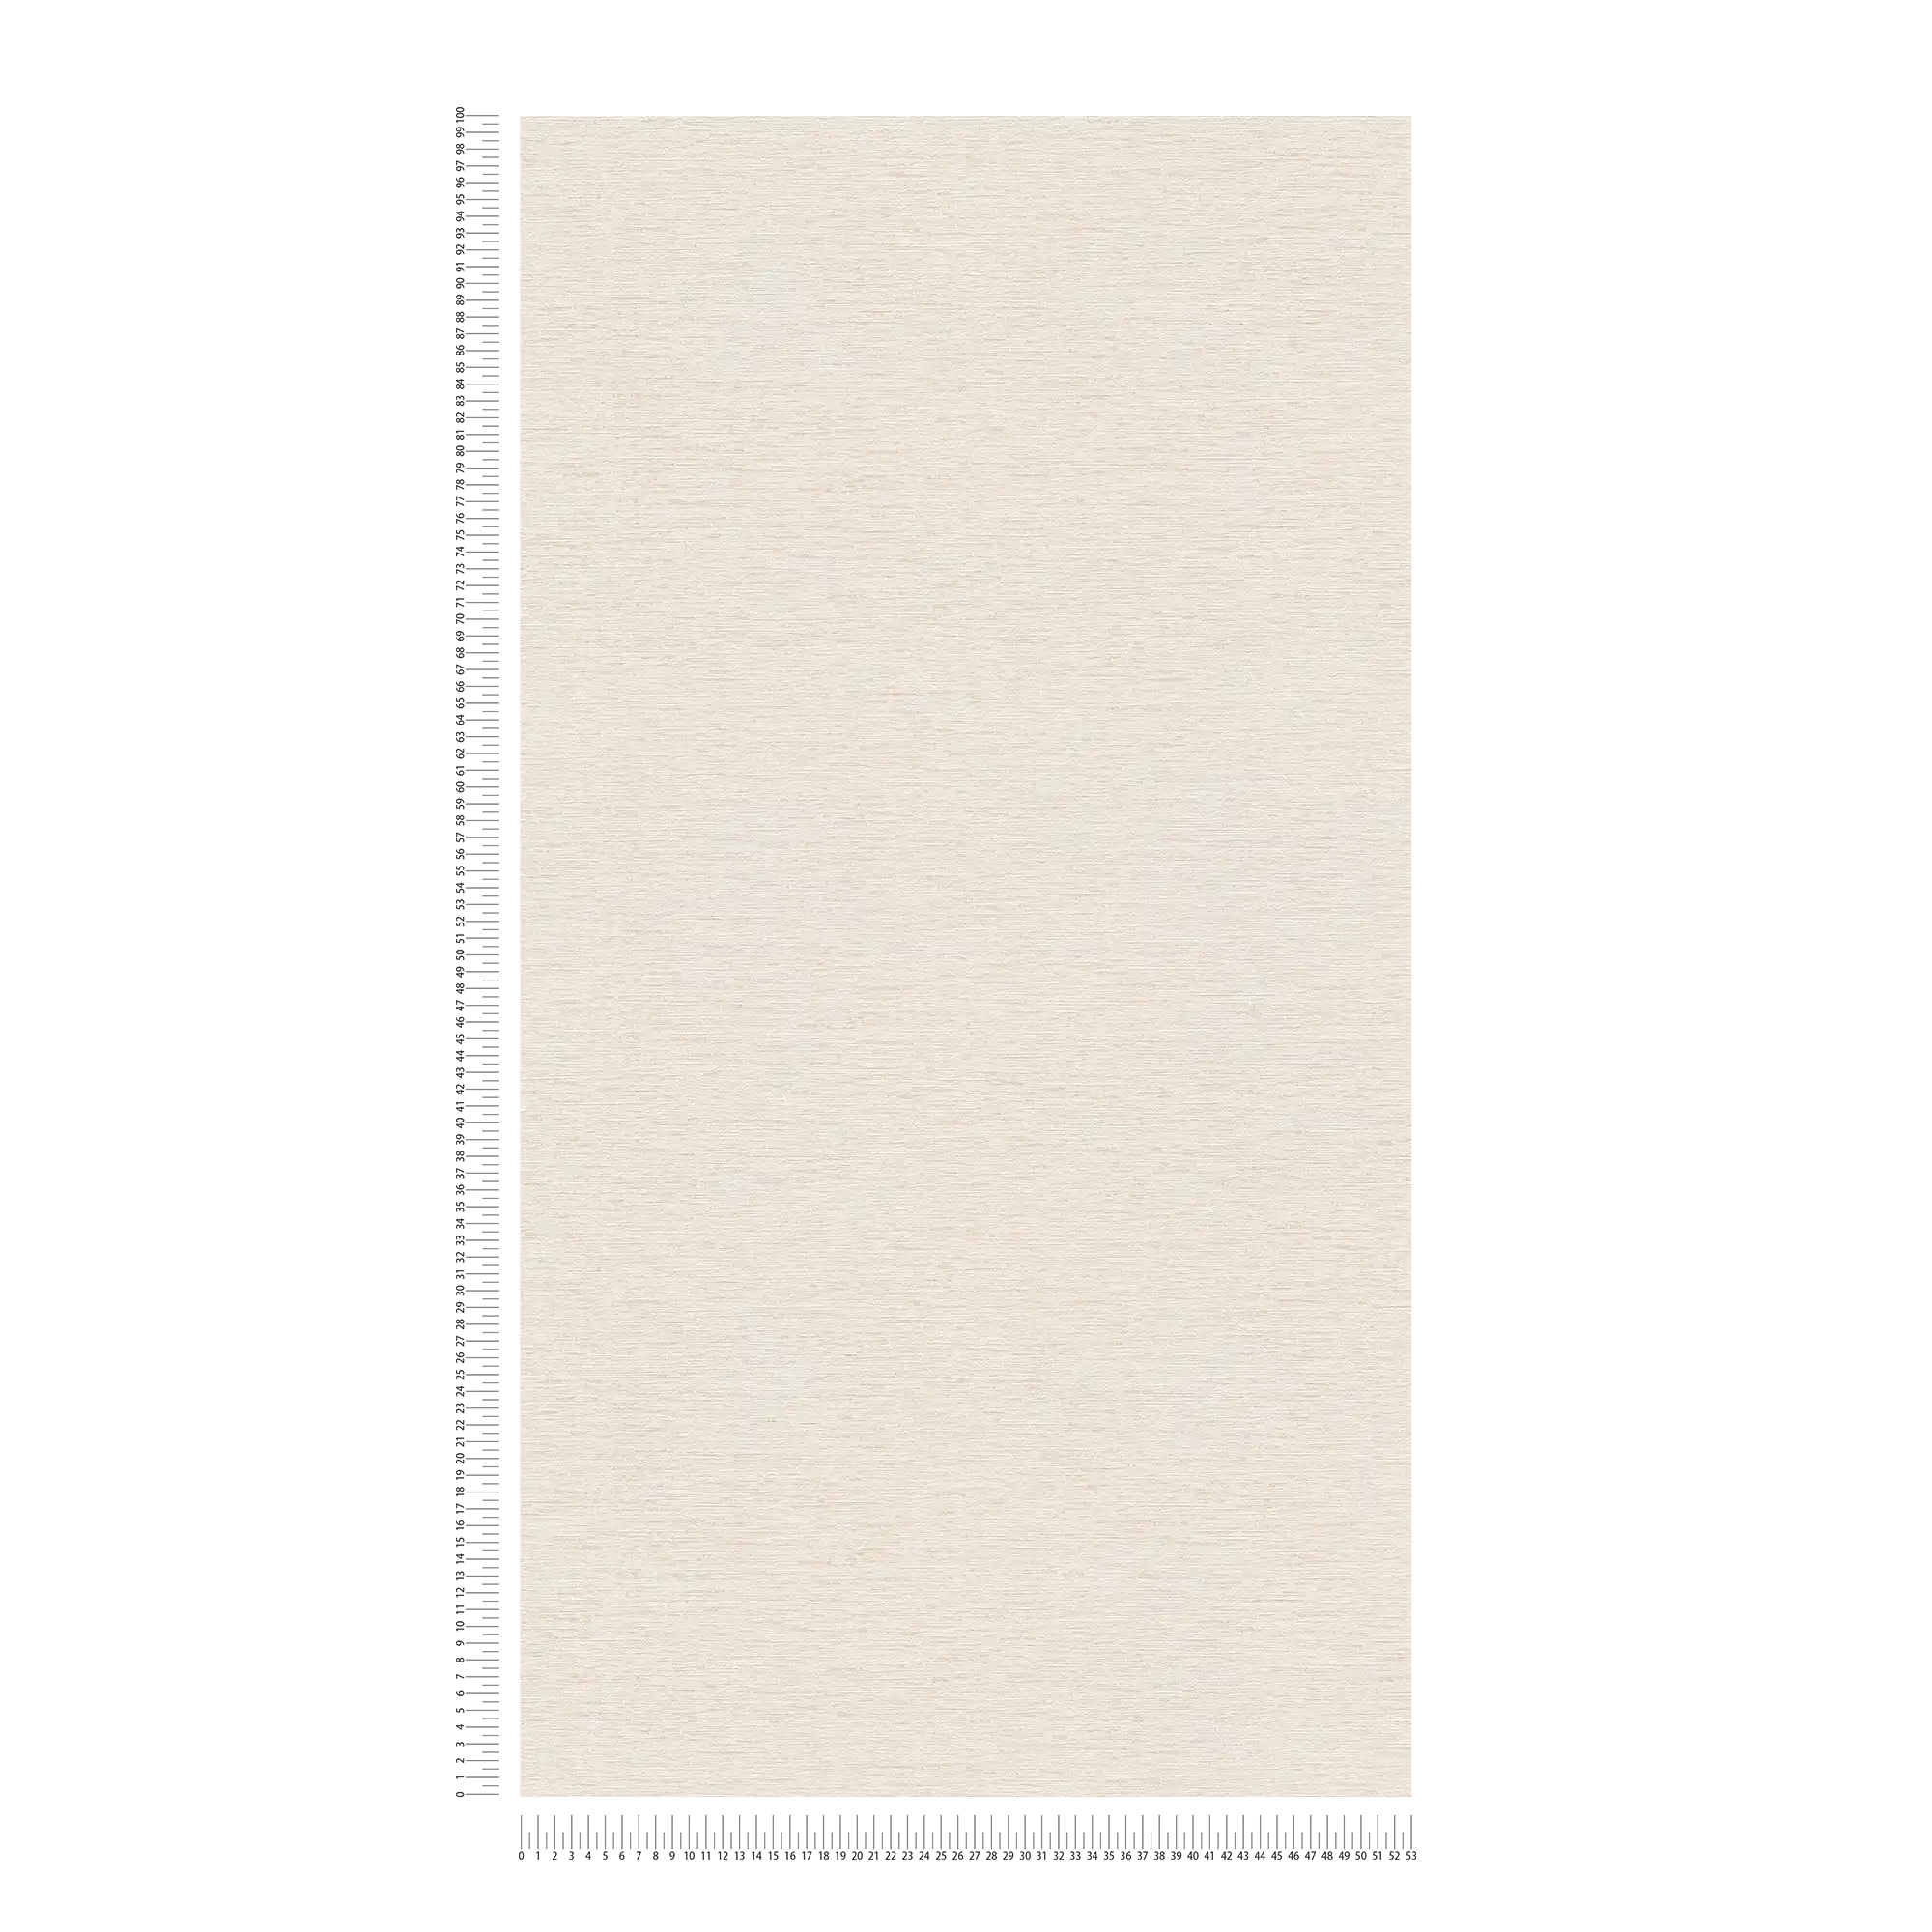             papier peint en papier uni avec structure tissée, mat - crème, blanc, beige
        